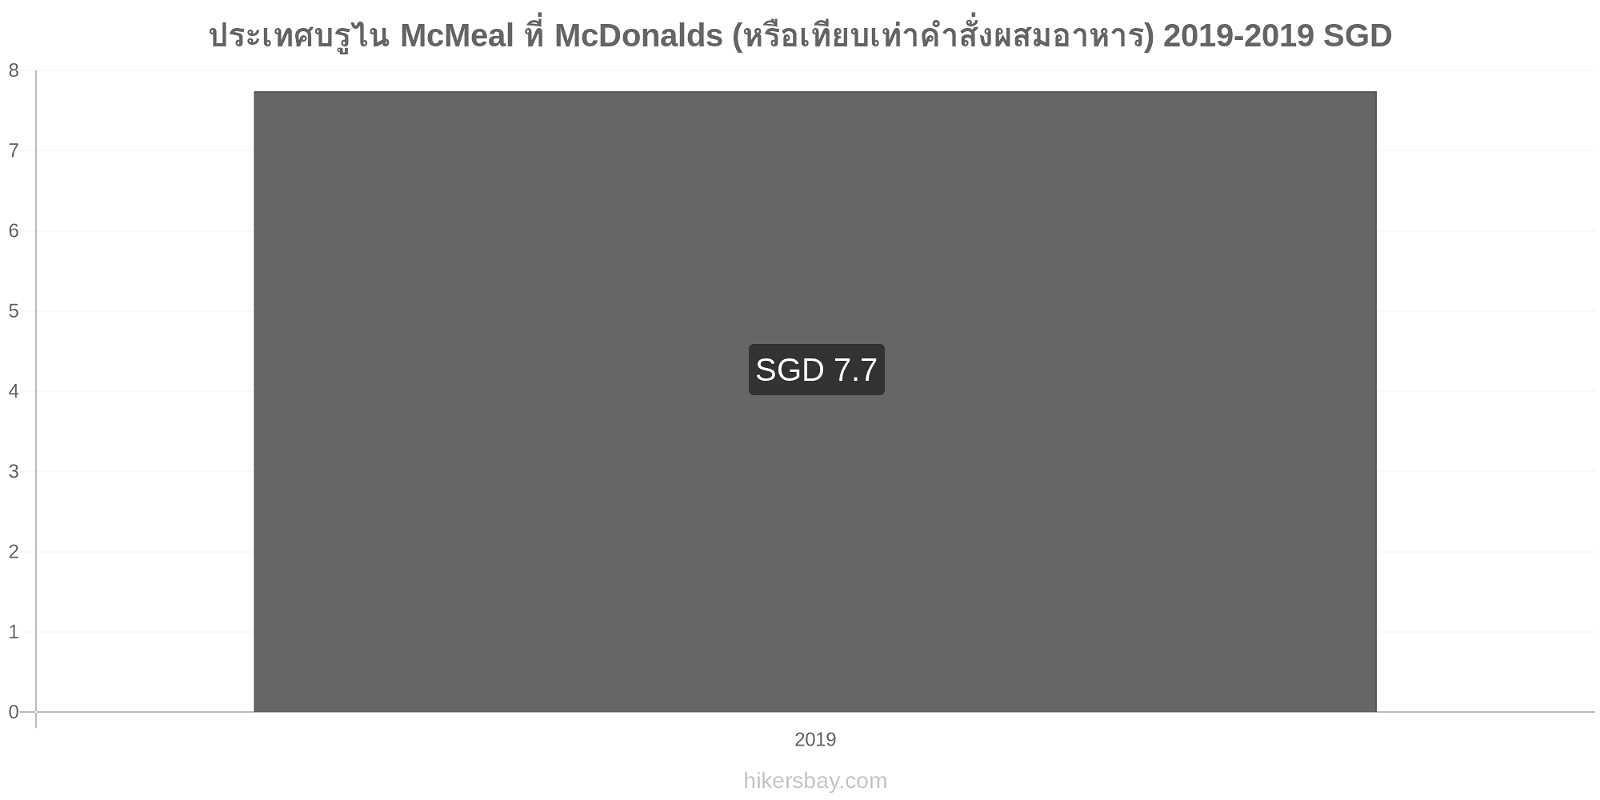 ประเทศบรูไน การเปลี่ยนแปลงราคา McMeal ที่ McDonalds (หรือเทียบเท่าคำสั่งผสมอาหาร) hikersbay.com